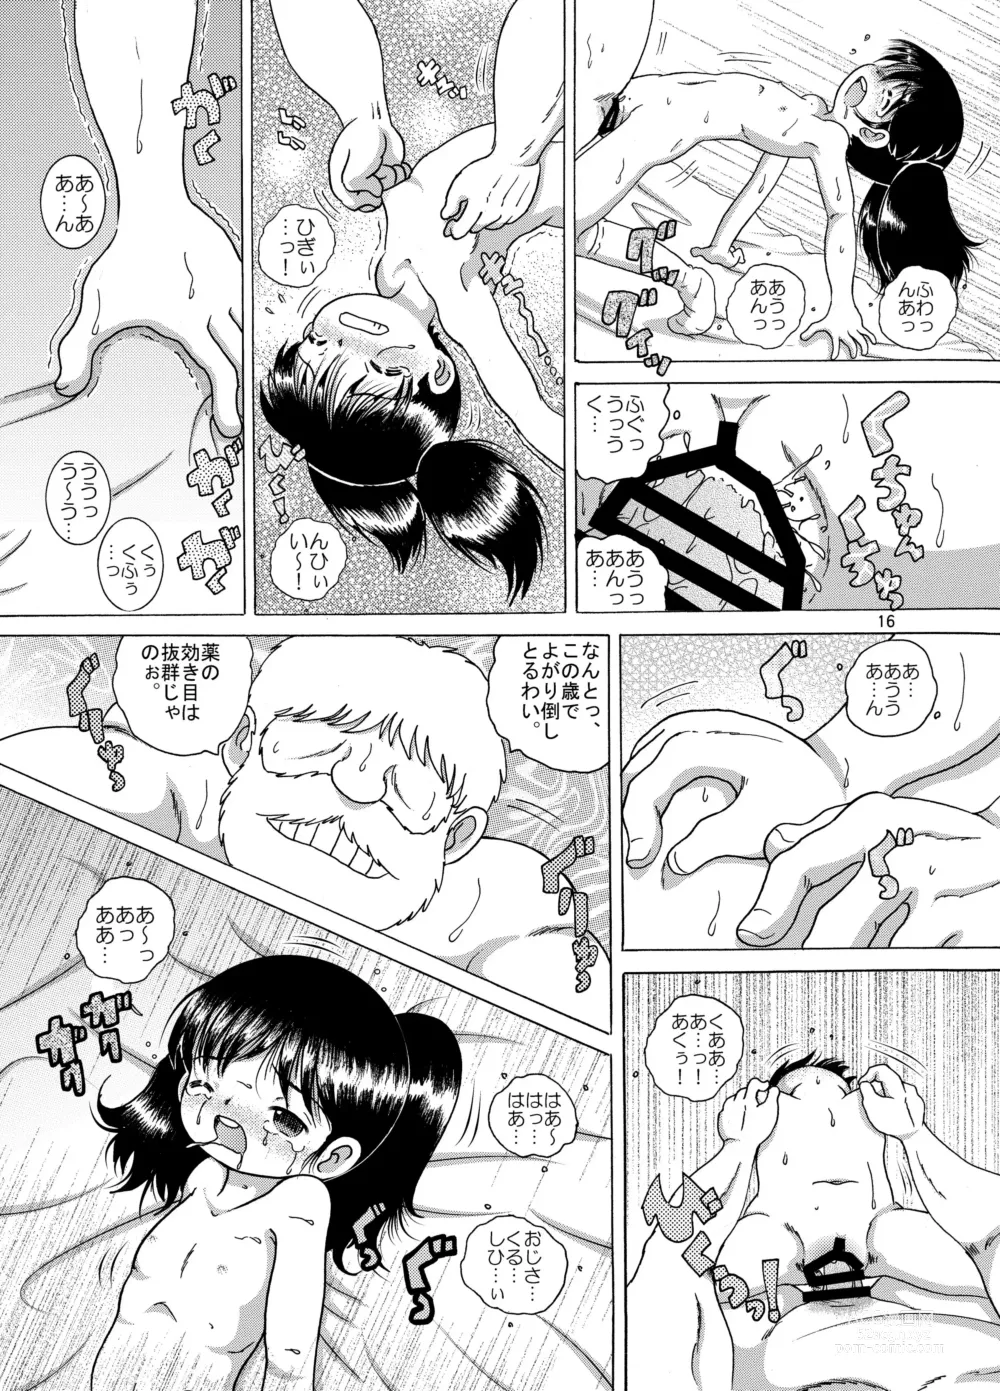 Page 16 of doujinshi Kakesei Amakan